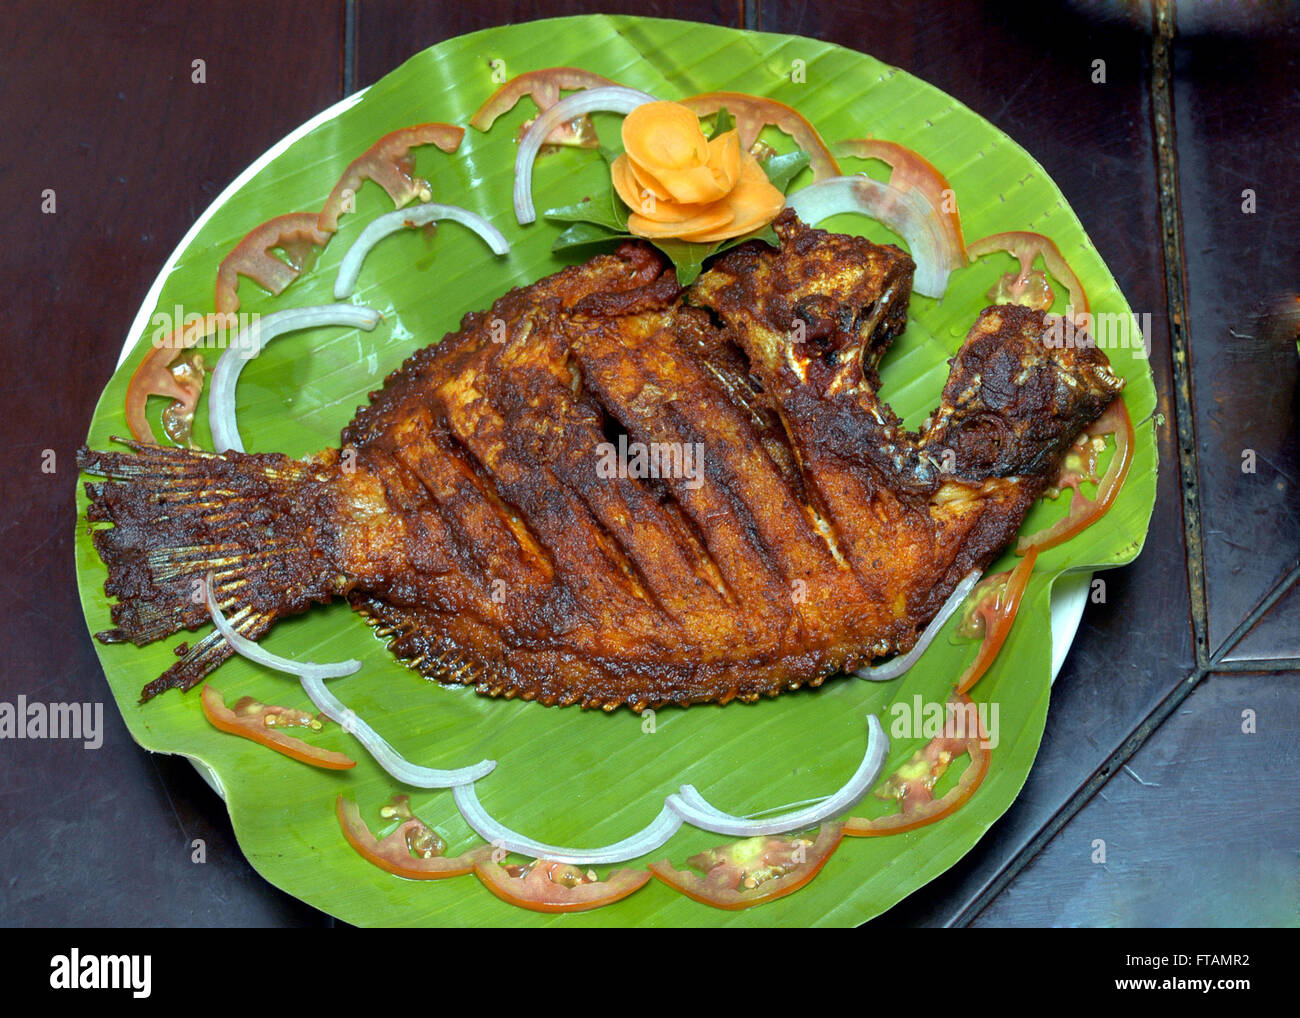 Pearlspot  Fish Fry, karimeen Fry  kumarakom ,kerala ,south india Stock Photo